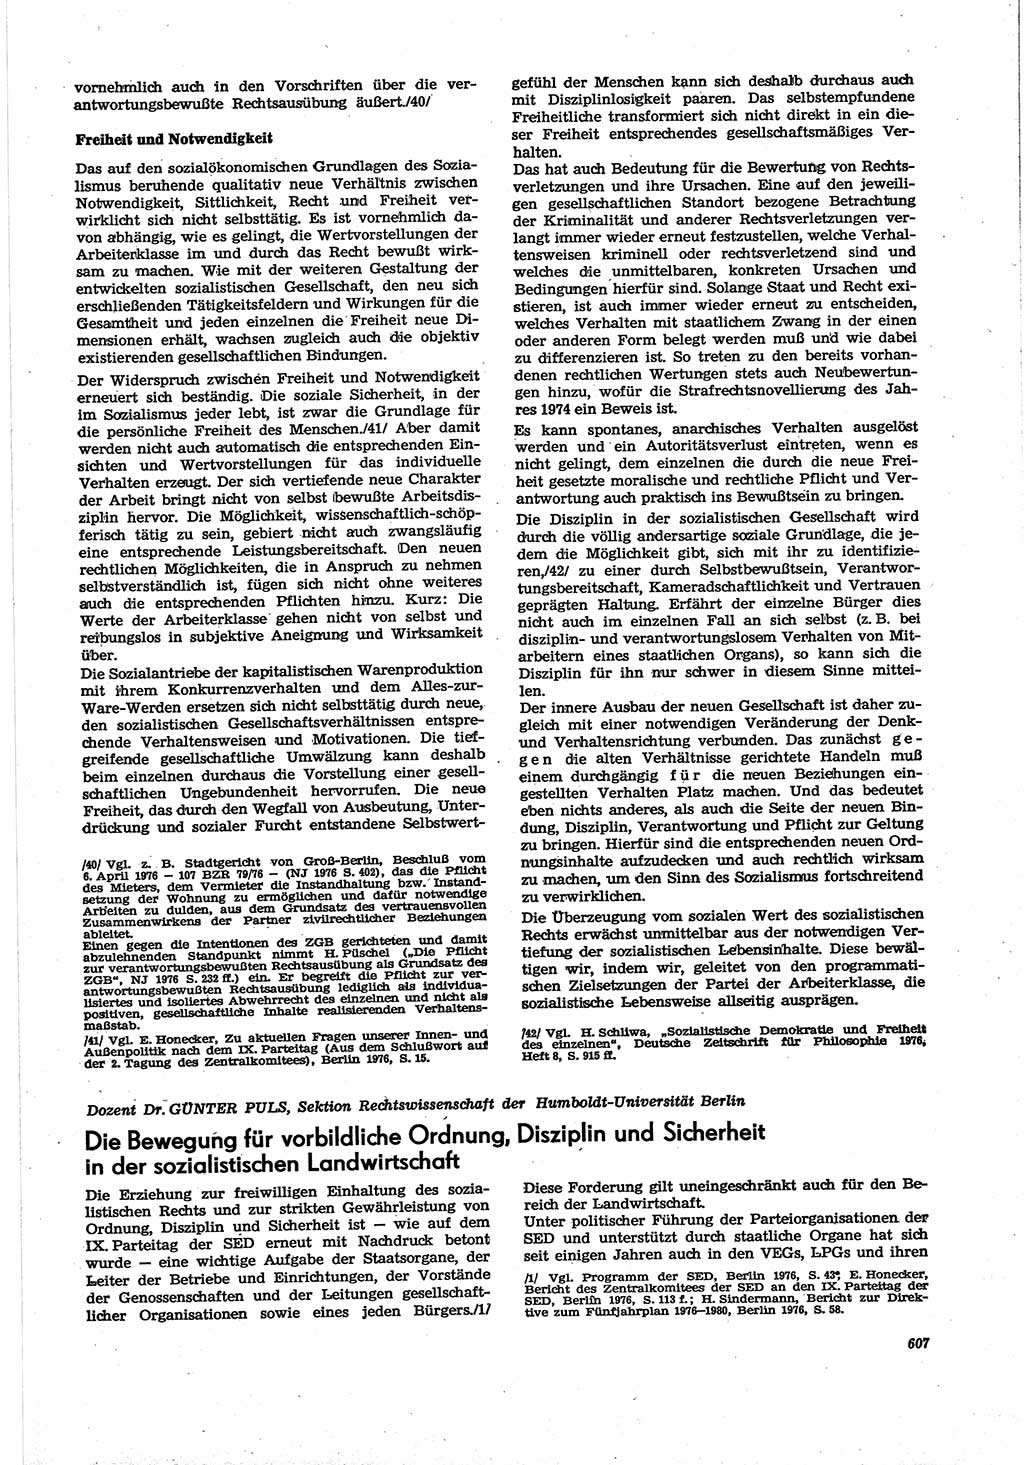 Neue Justiz (NJ), Zeitschrift für Recht und Rechtswissenschaft [Deutsche Demokratische Republik (DDR)], 30. Jahrgang 1976, Seite 607 (NJ DDR 1976, S. 607)